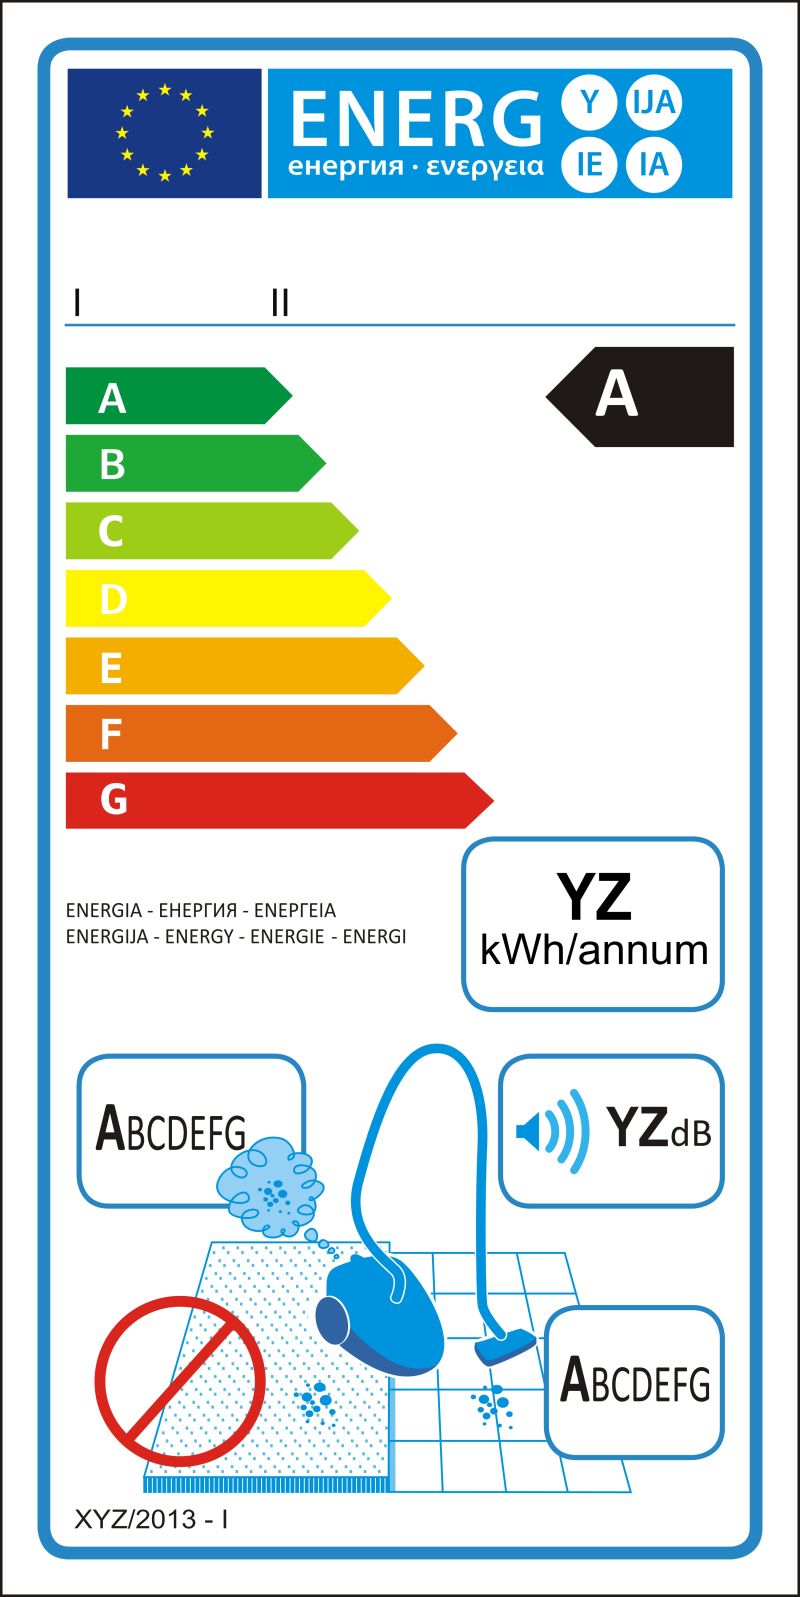 硬质地板真空吸尘器新能源等级矢量图标签